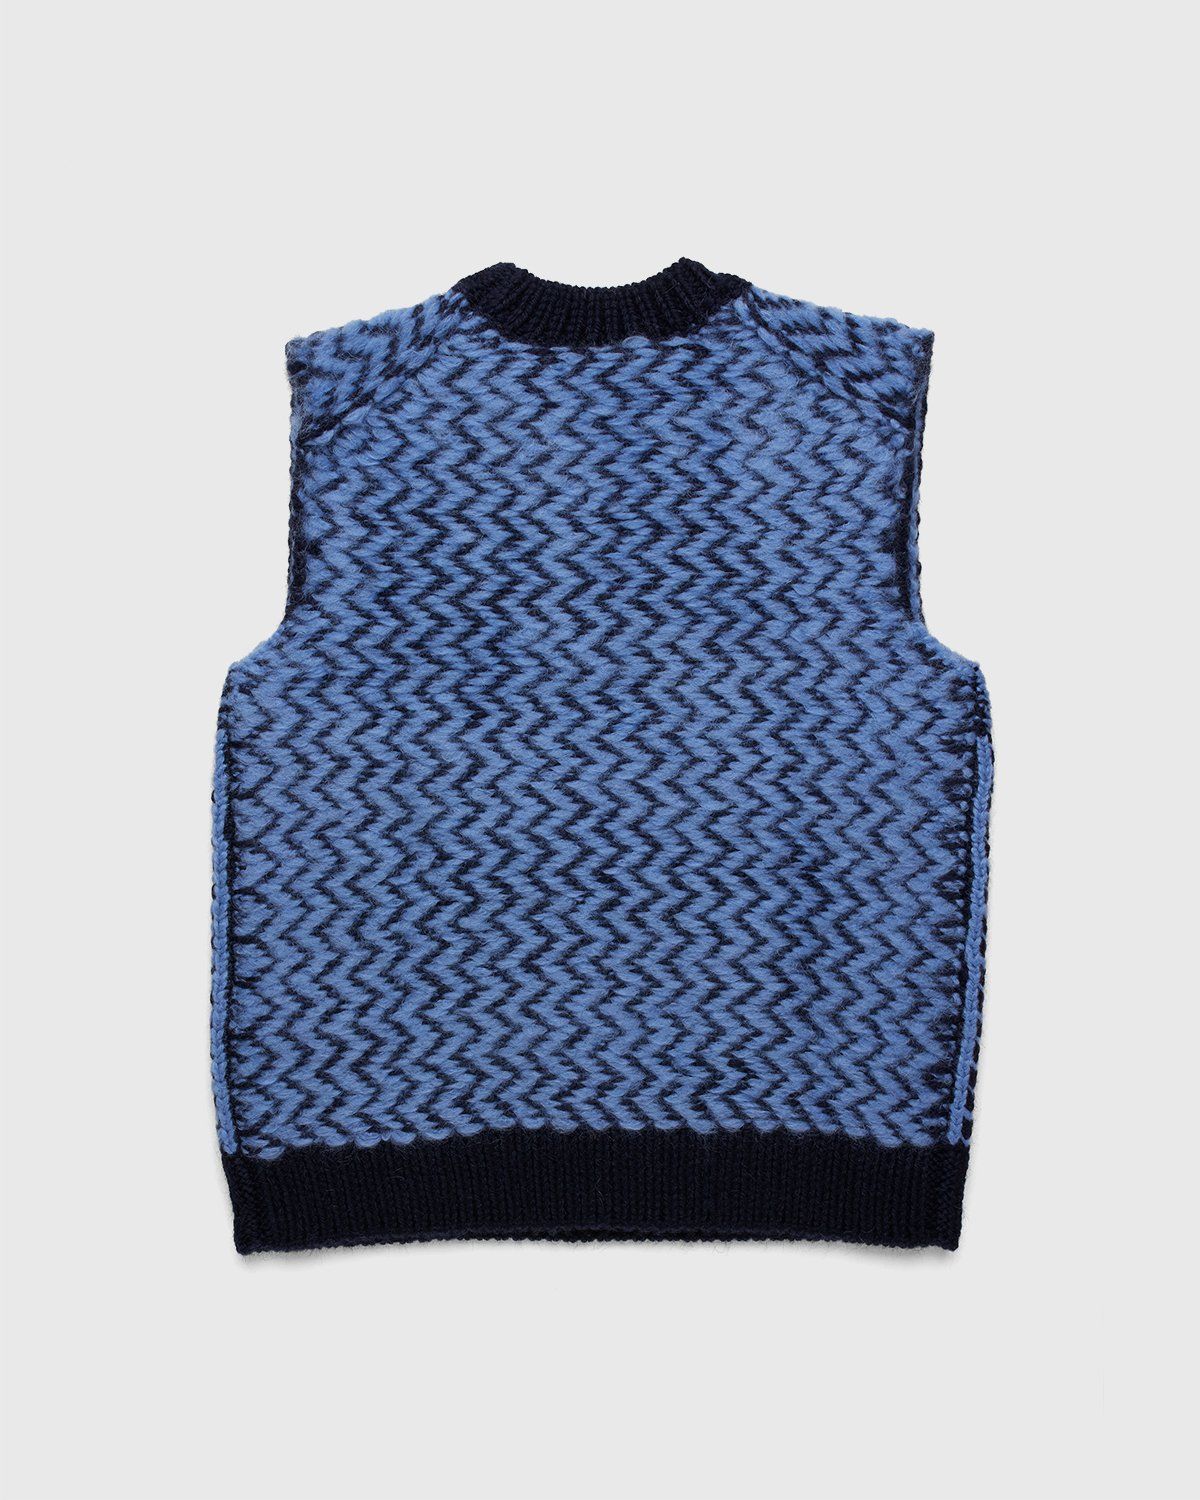 Jil Sander – Vest Knitted Blue - Image 2